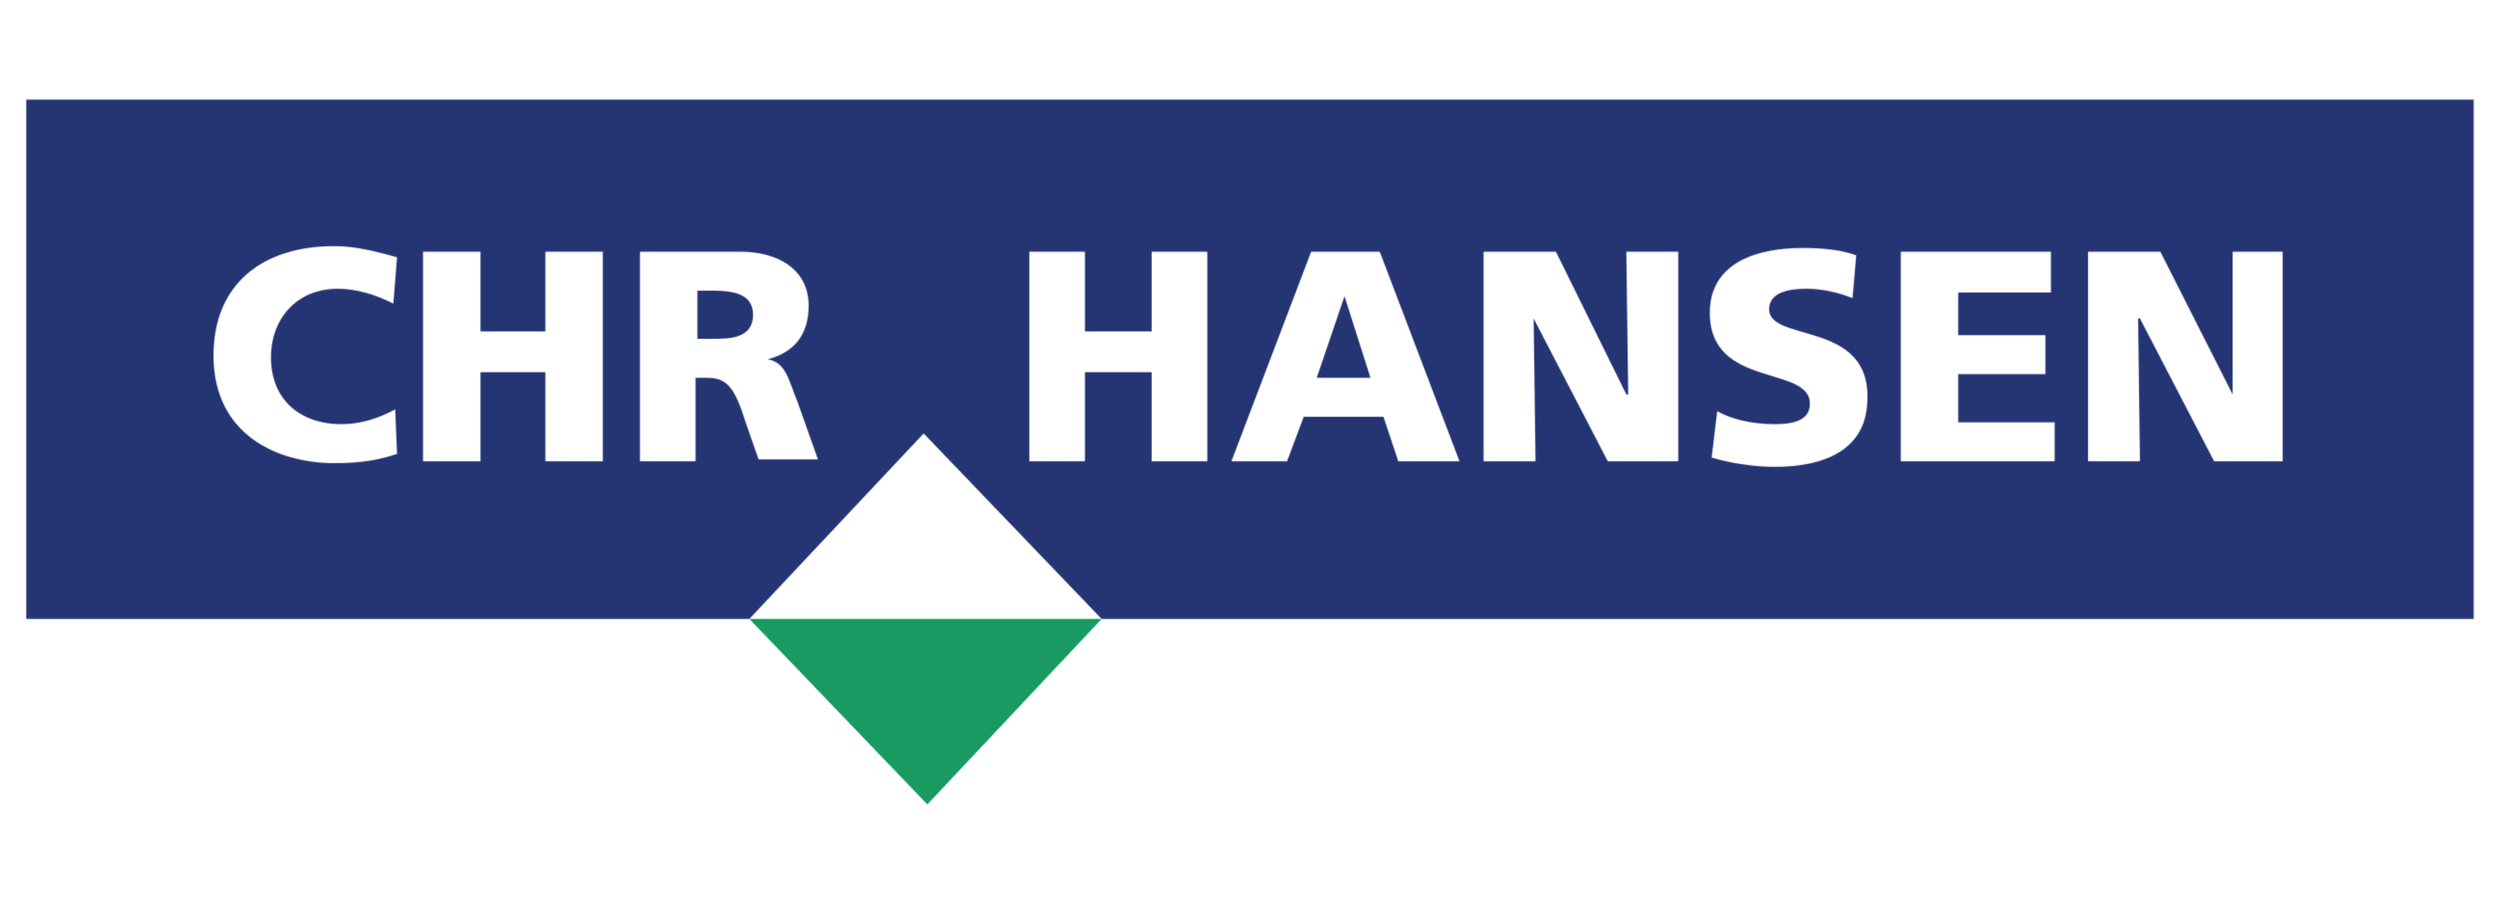 chr. hansen logo